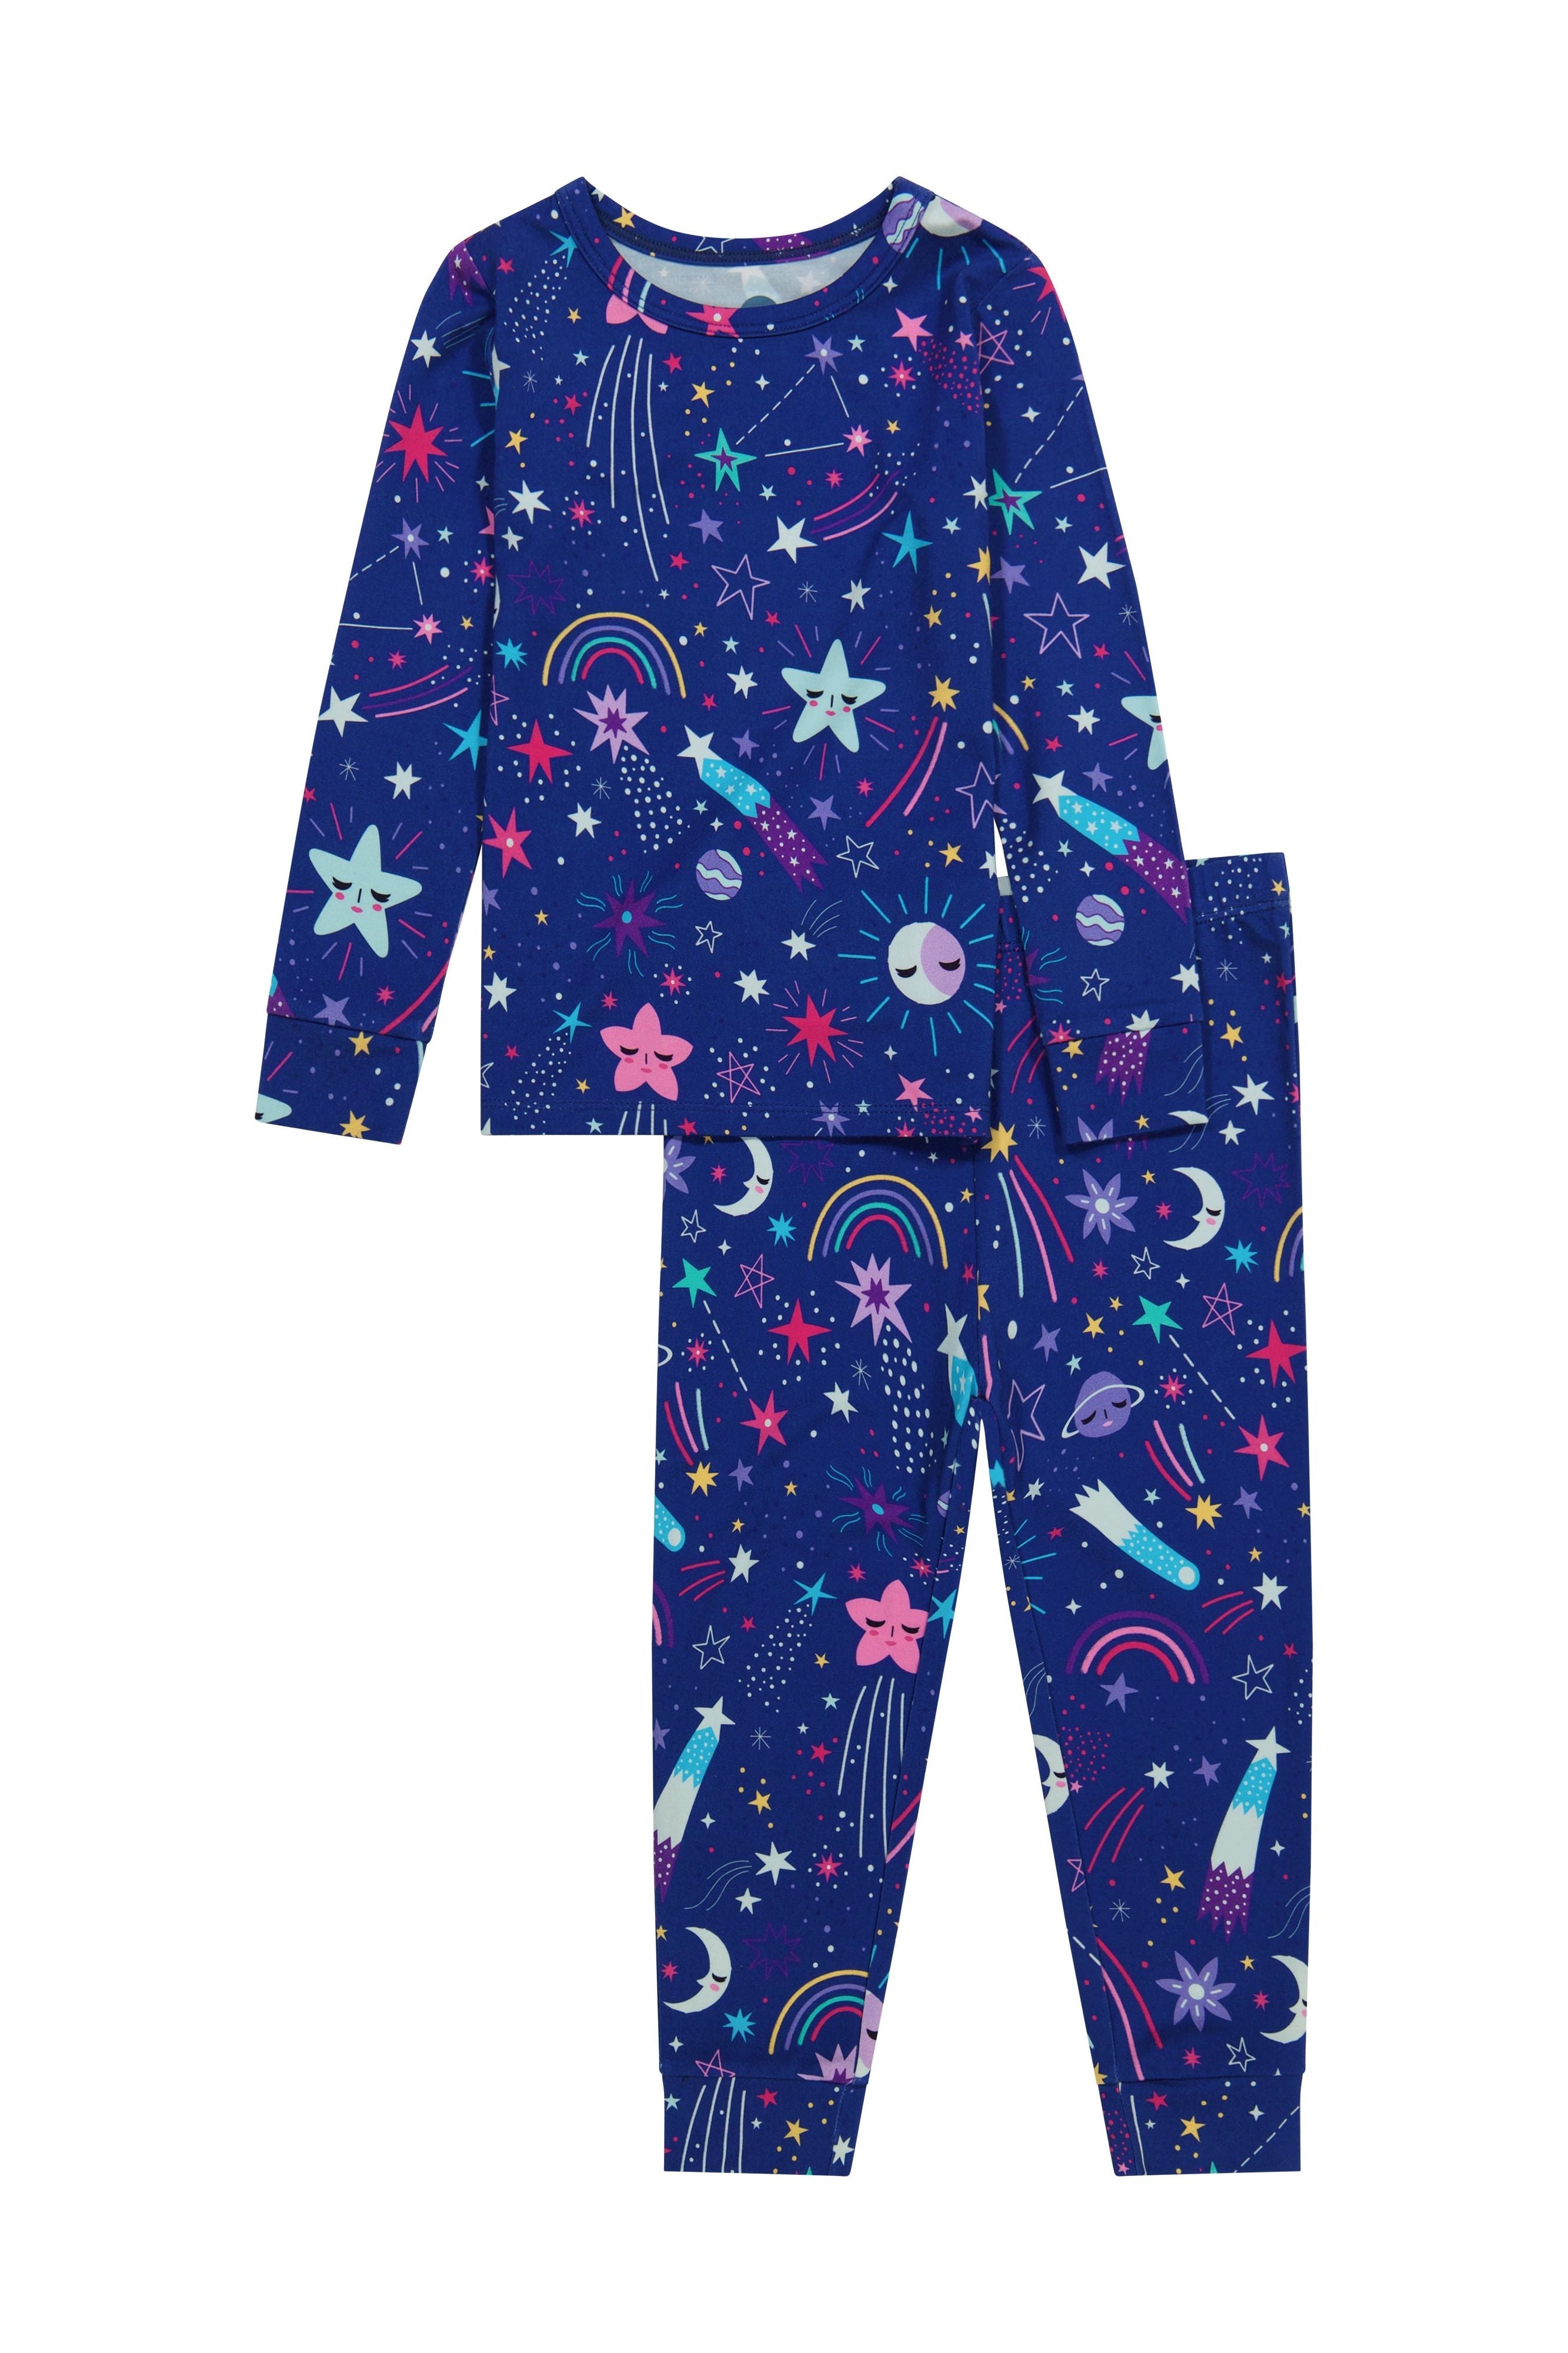 Pajama Set -  Galaxy